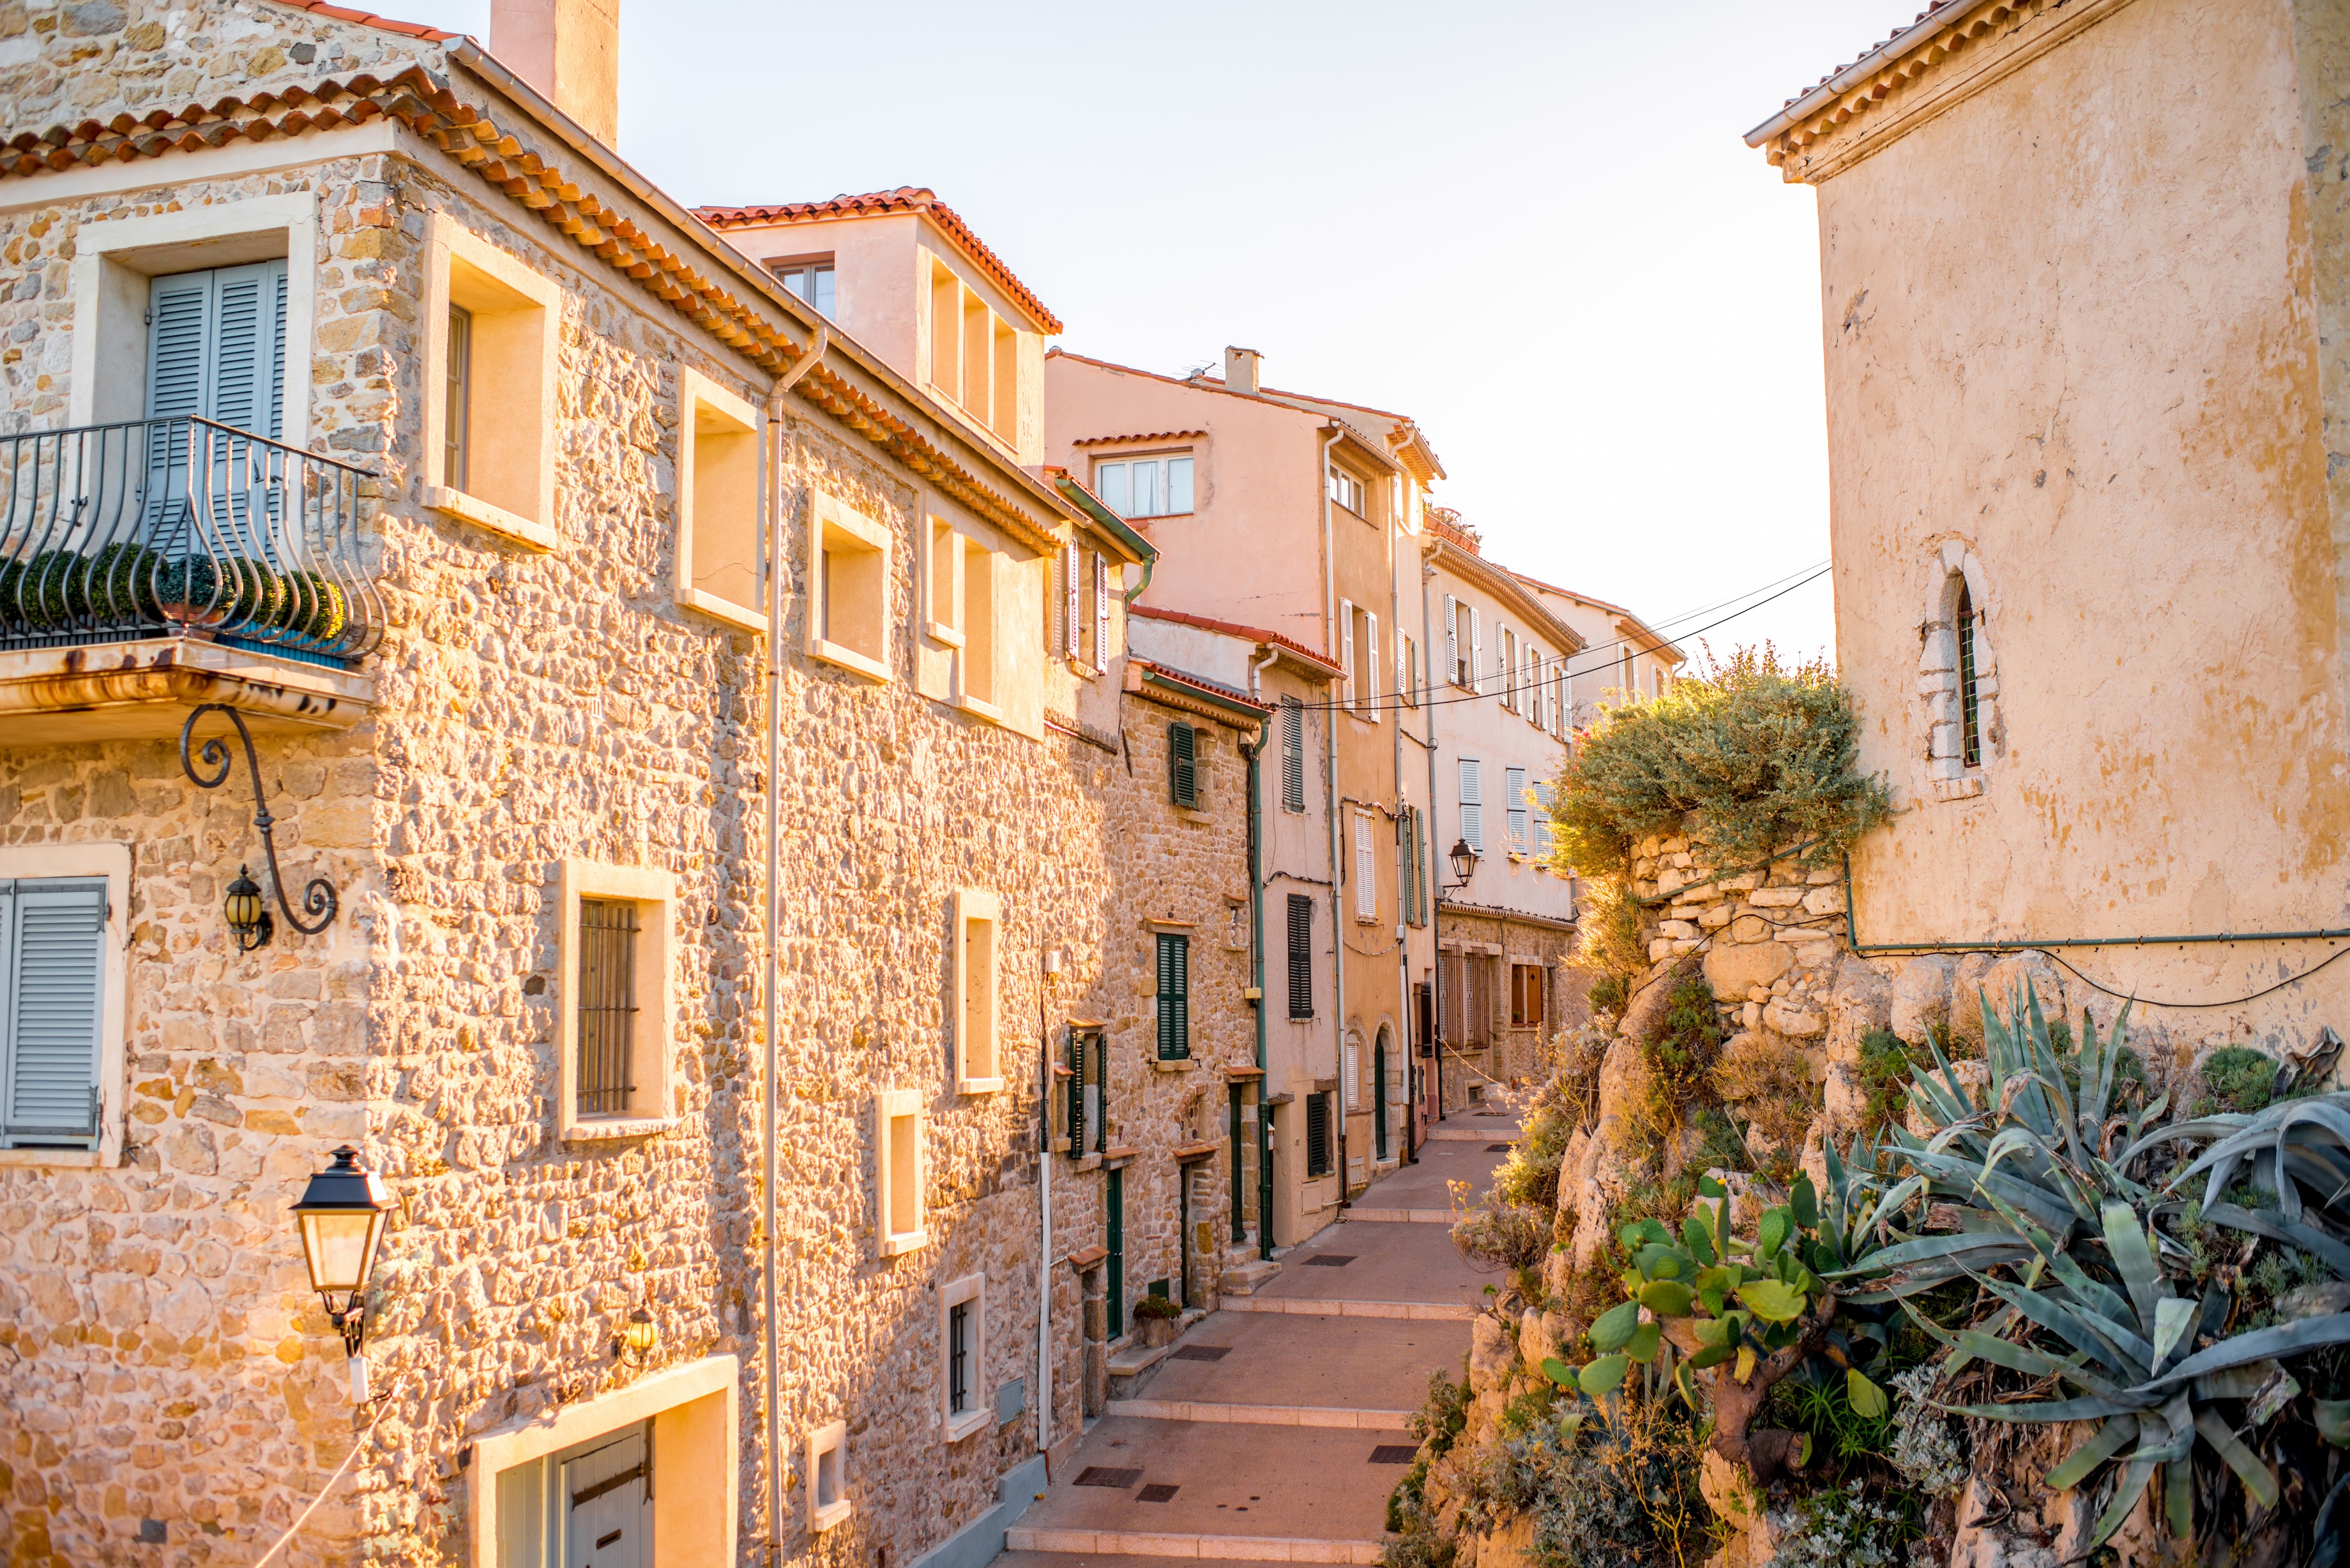 Imagem com ruas da cidade de Antibes em um convidativo e pitoresco cenário com casinhas seculares em tons pastel que contrastam com o azul do céu. 